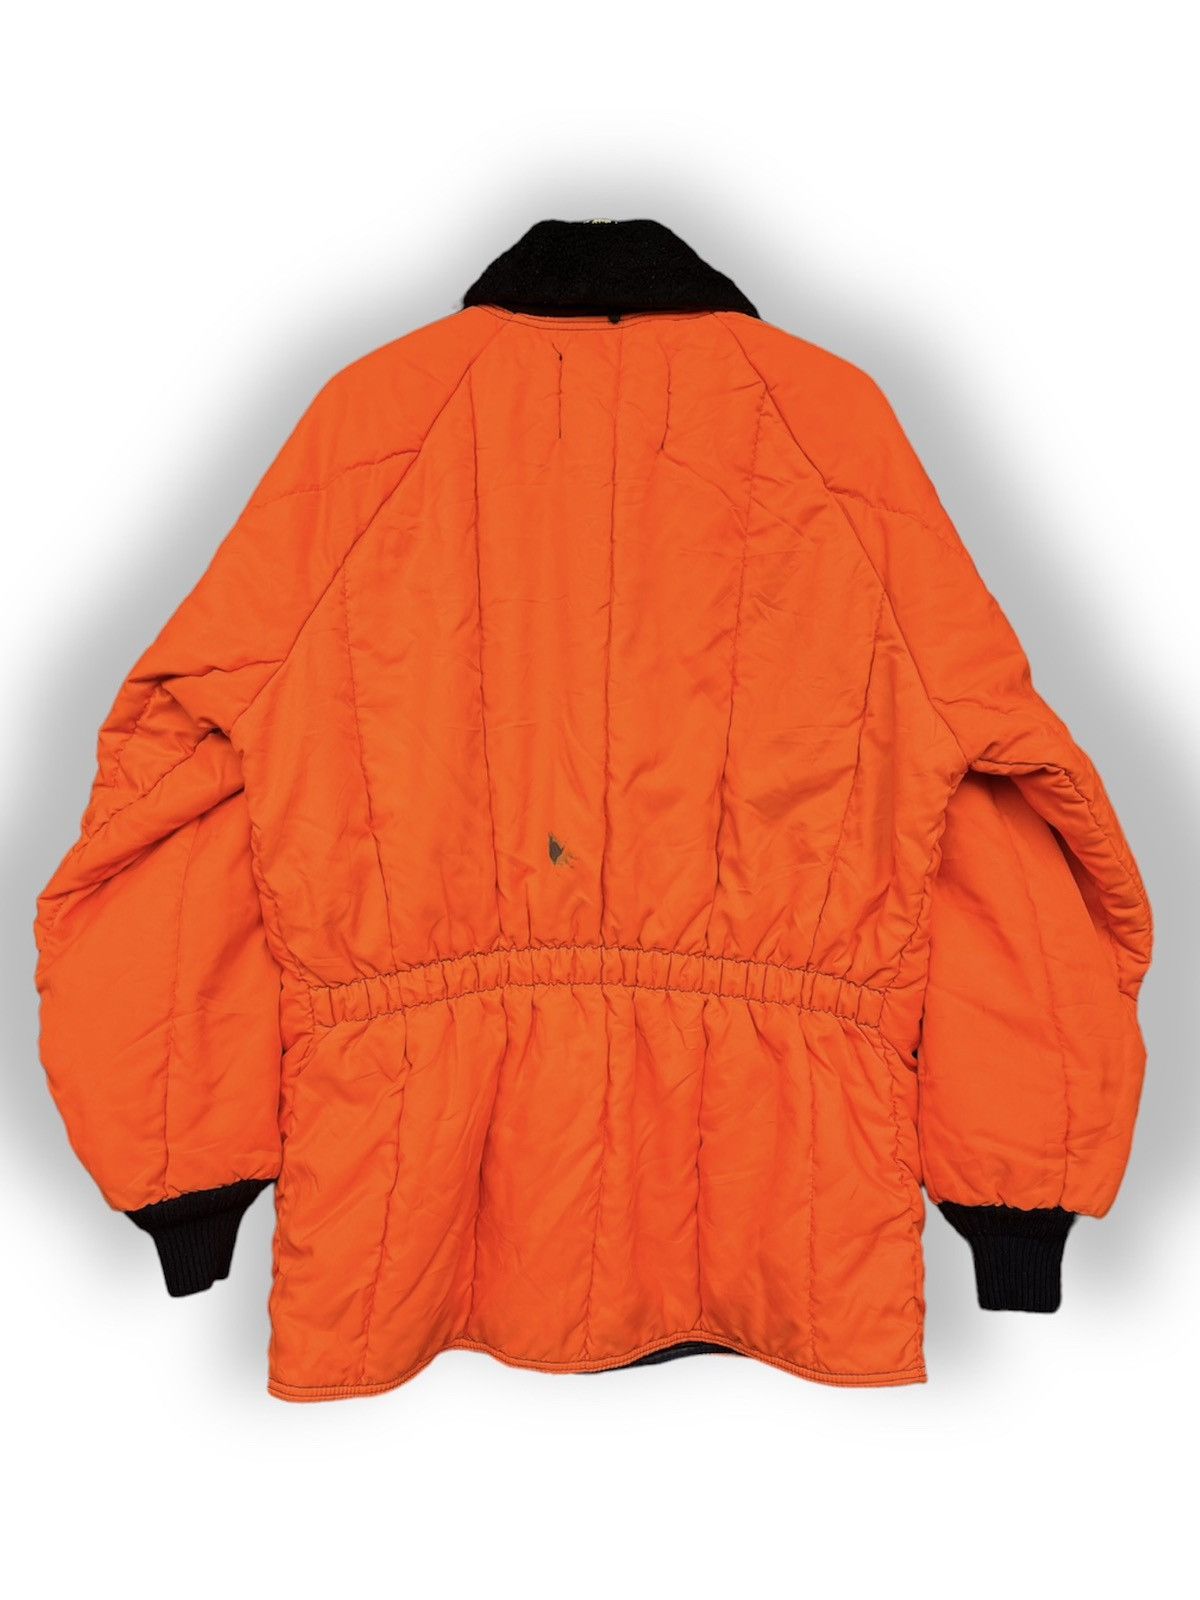 Refrigewear - Refrigiwear Winter Iron Tuff Puffer Jacket - 2